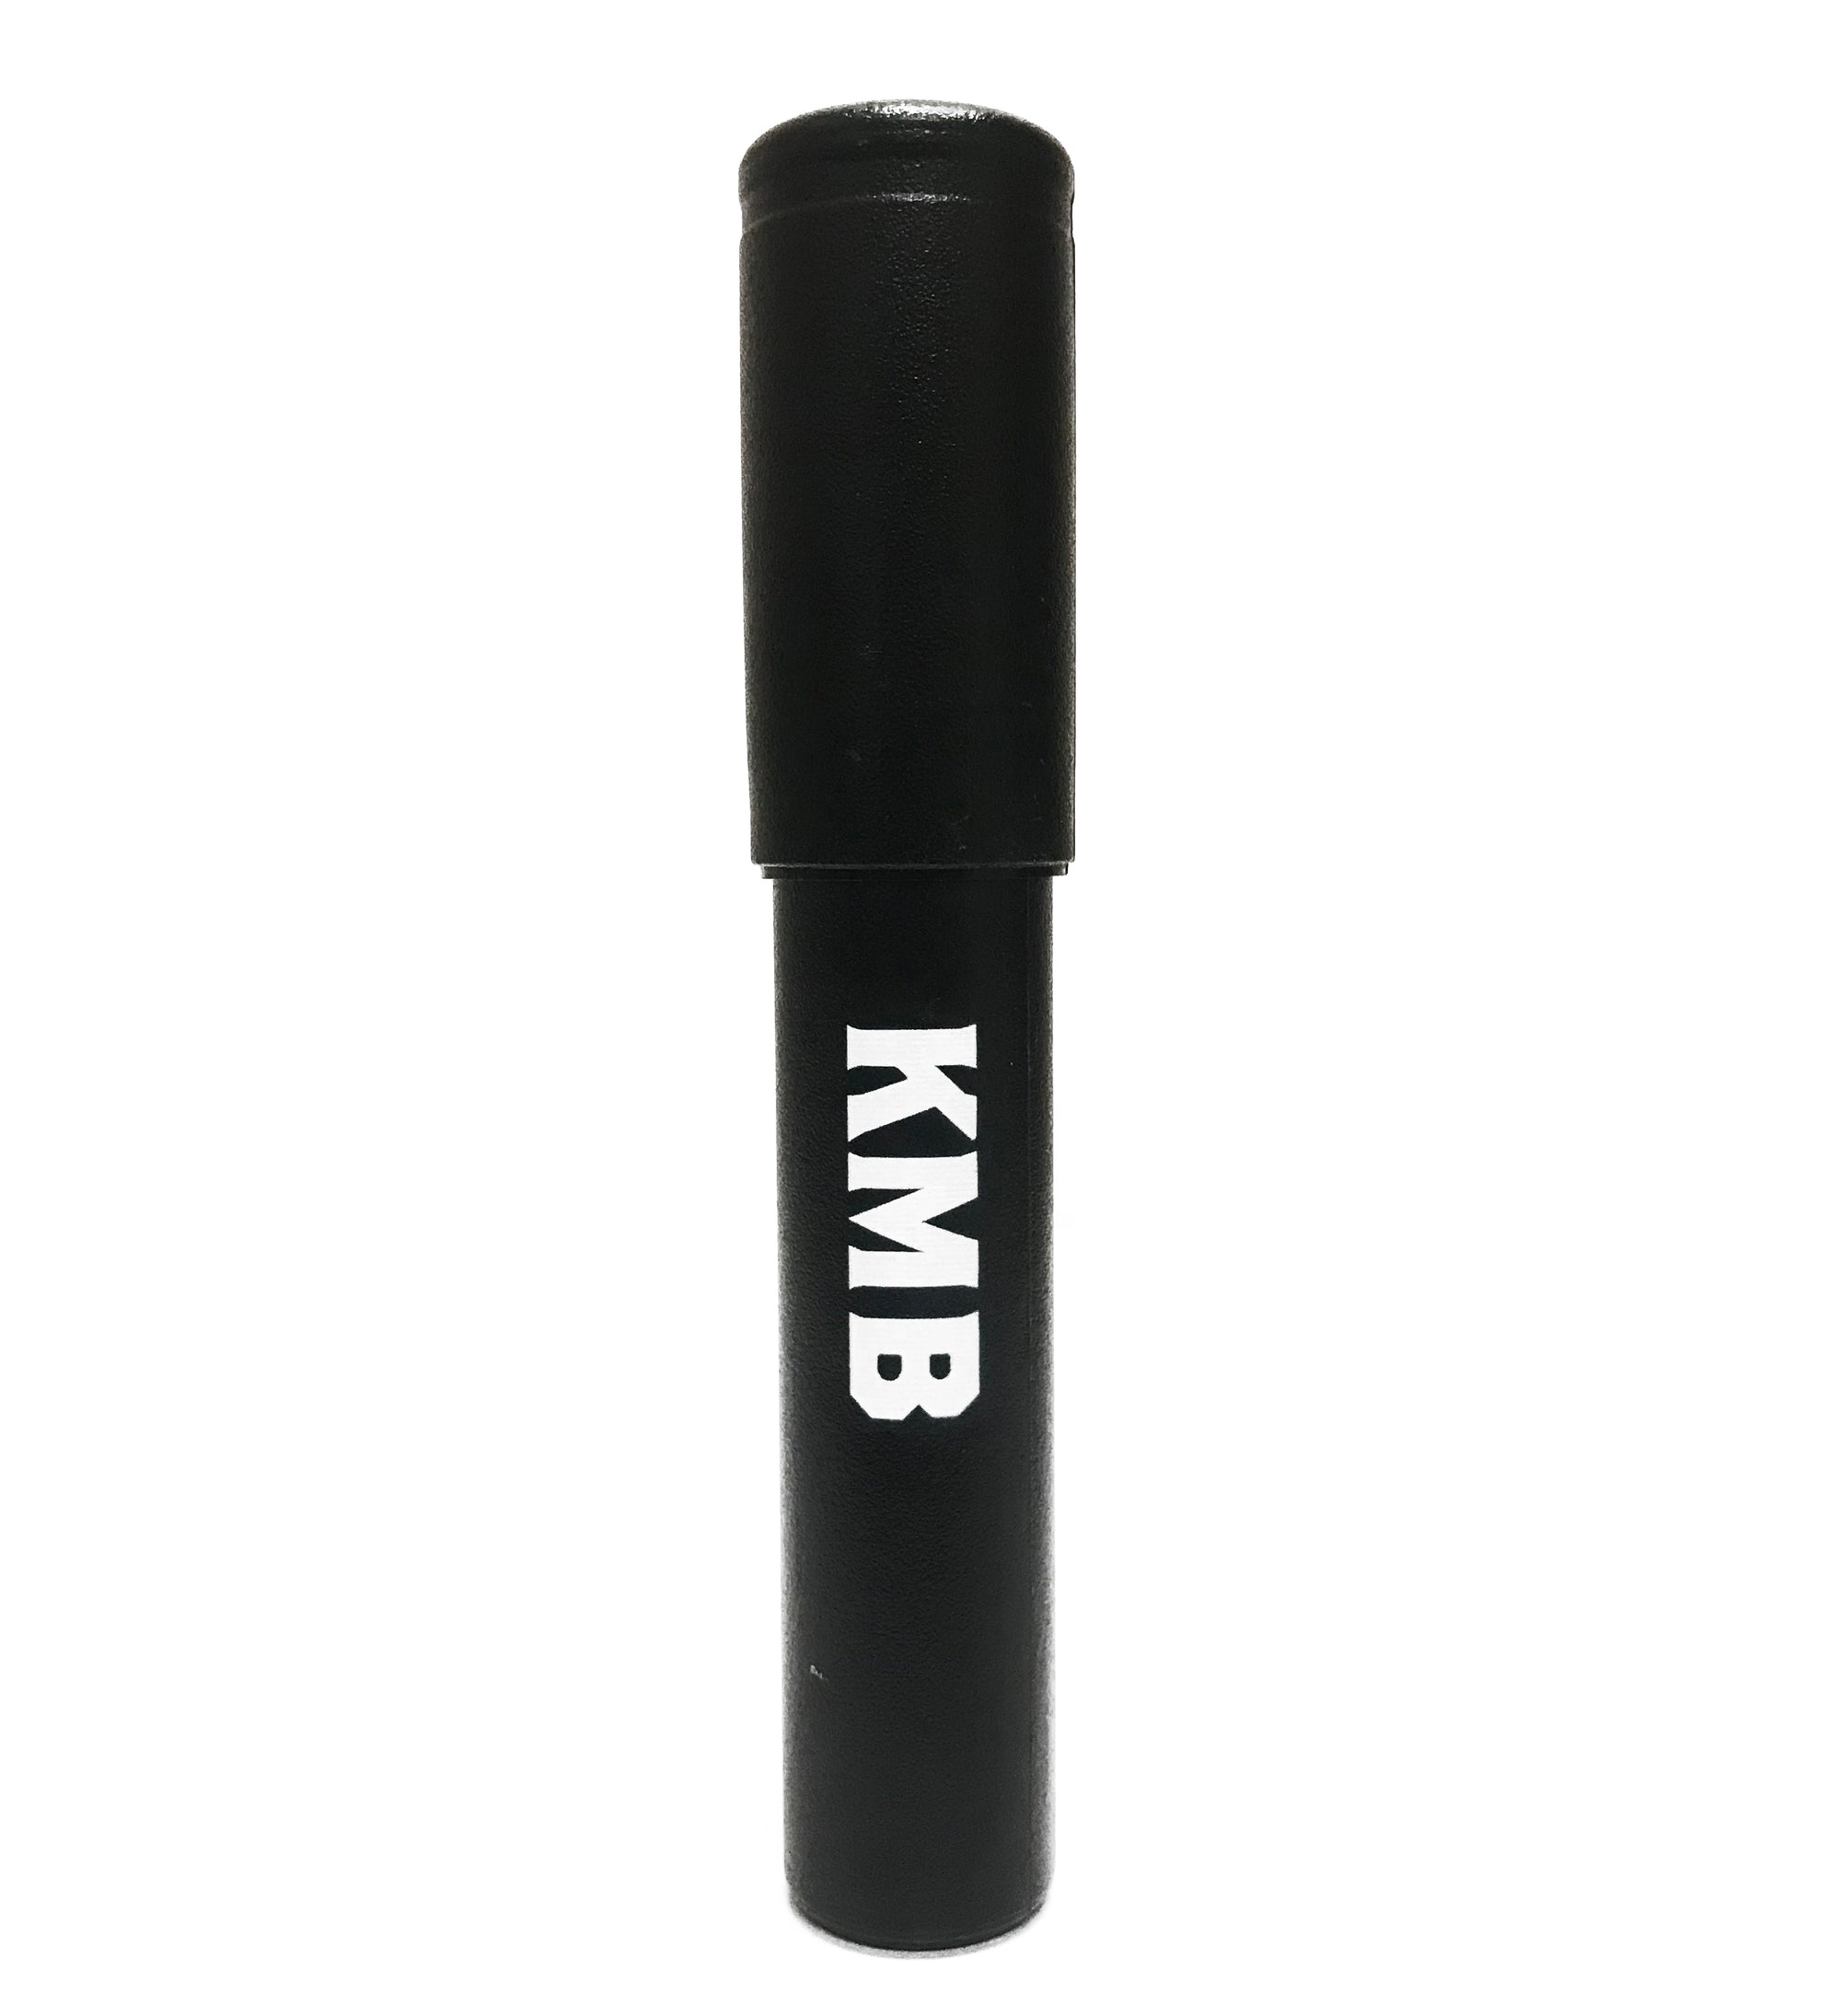 Black Adjustable Plastic Cigar Tube